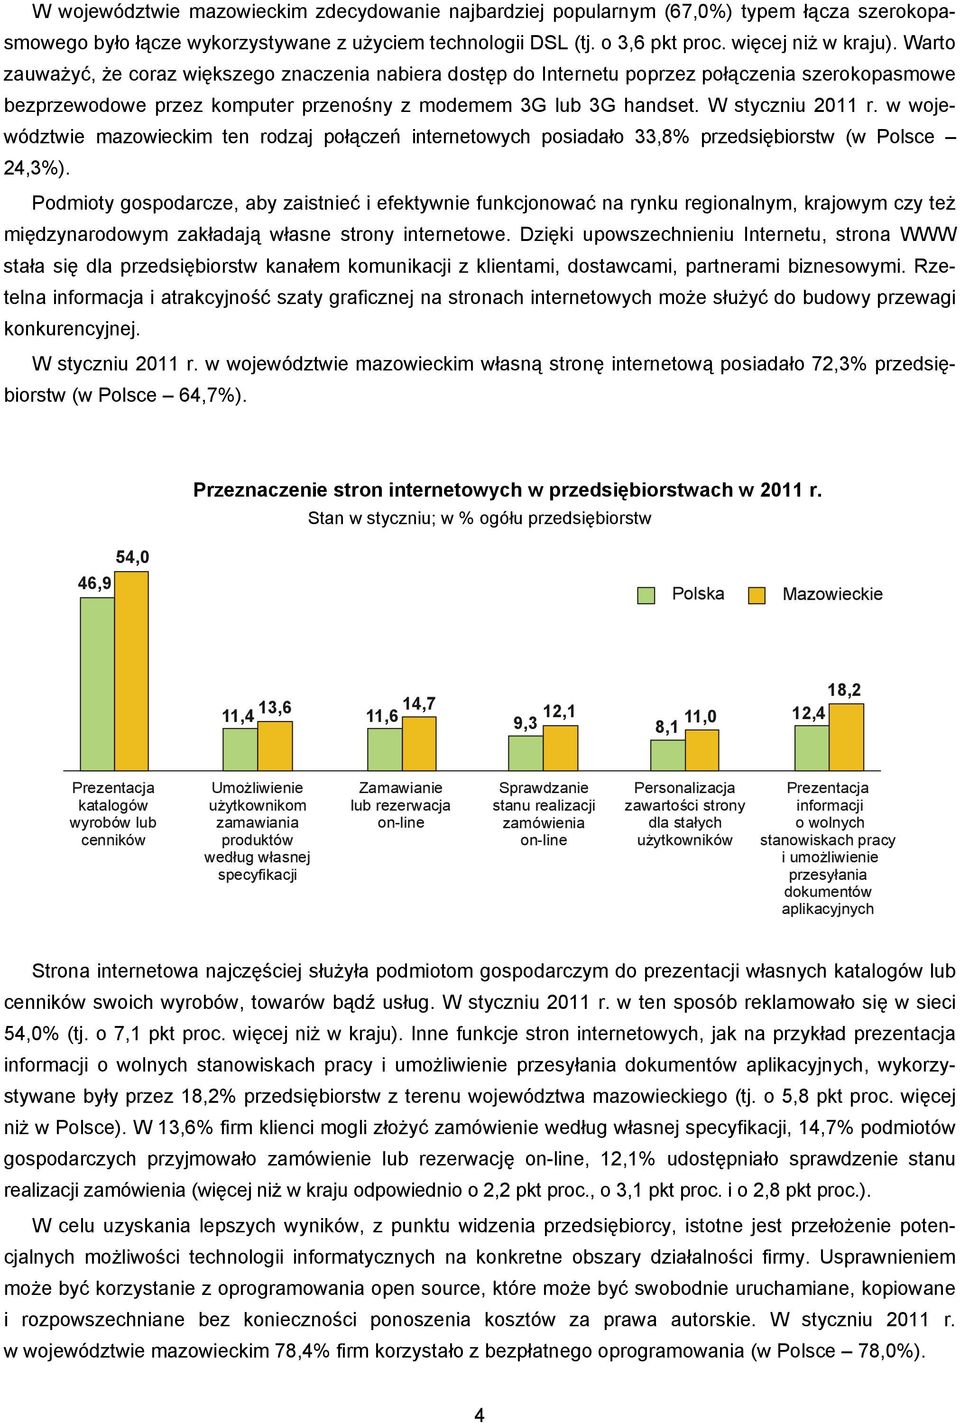 w województwie mazowieckim ten rodzaj połączeń internetowych posiadało 33,8% przedsiębiorstw (w Polsce 24,3%).